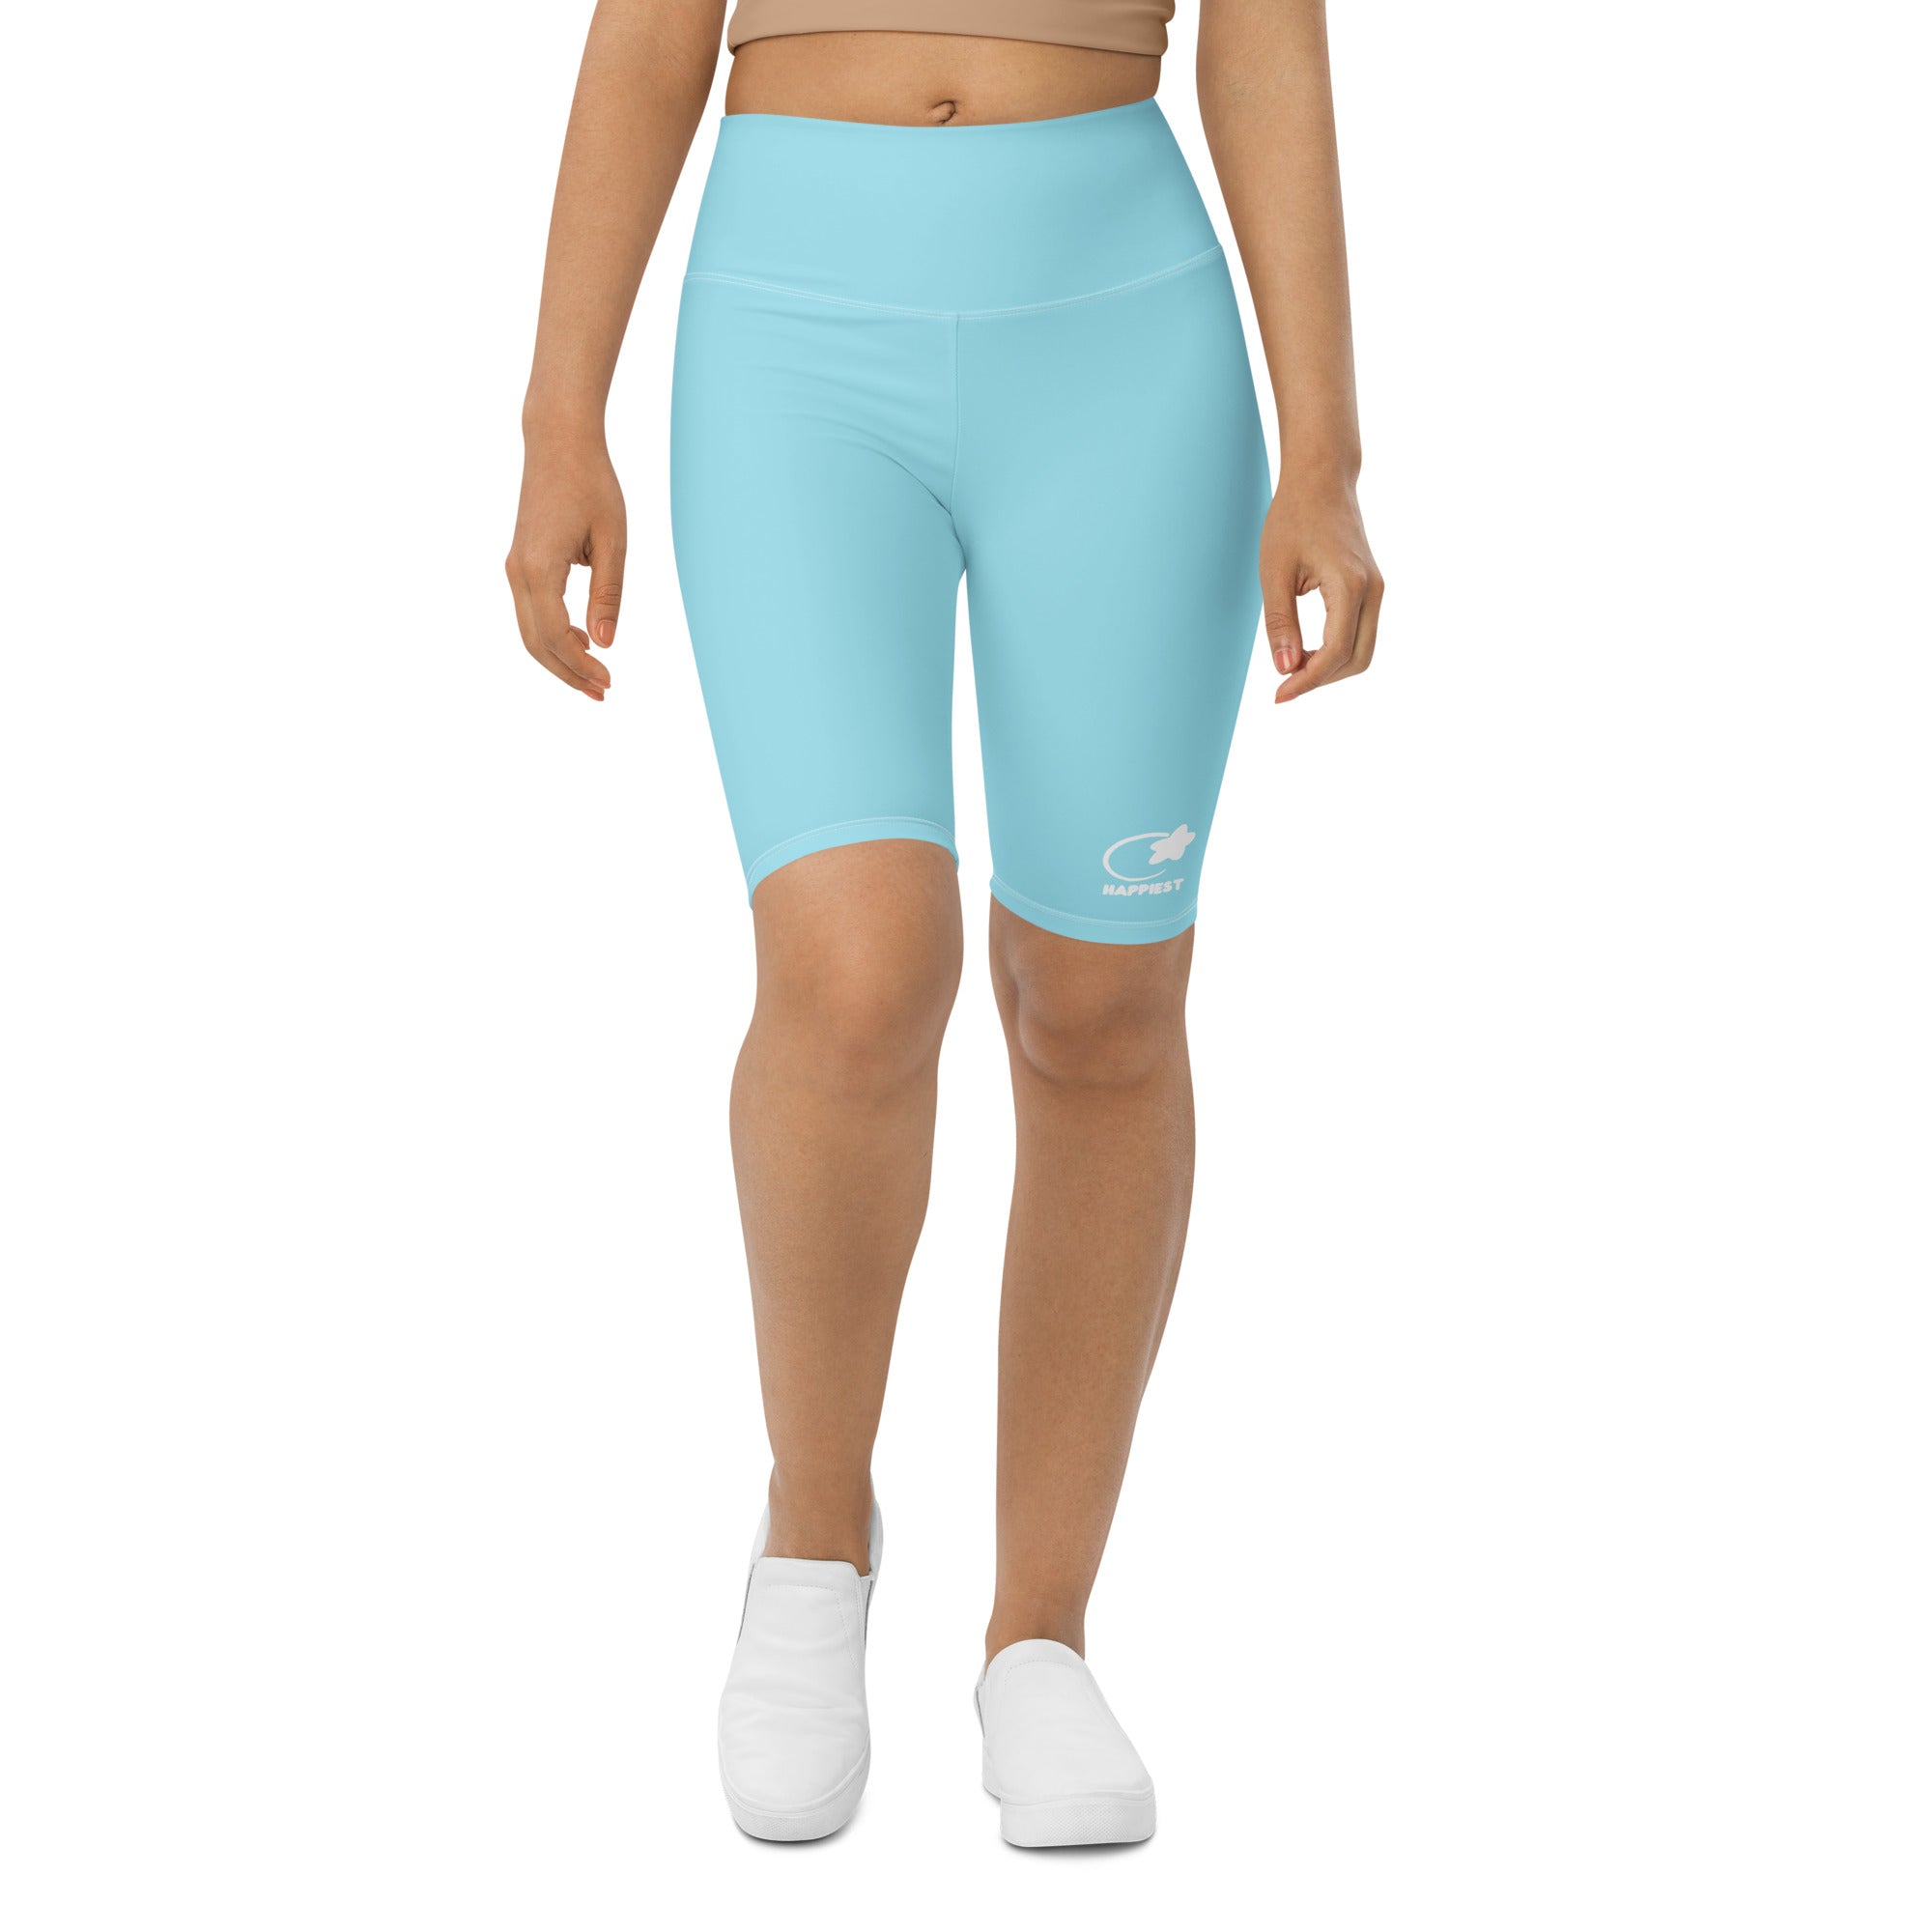 Bluebell Biker Shorts